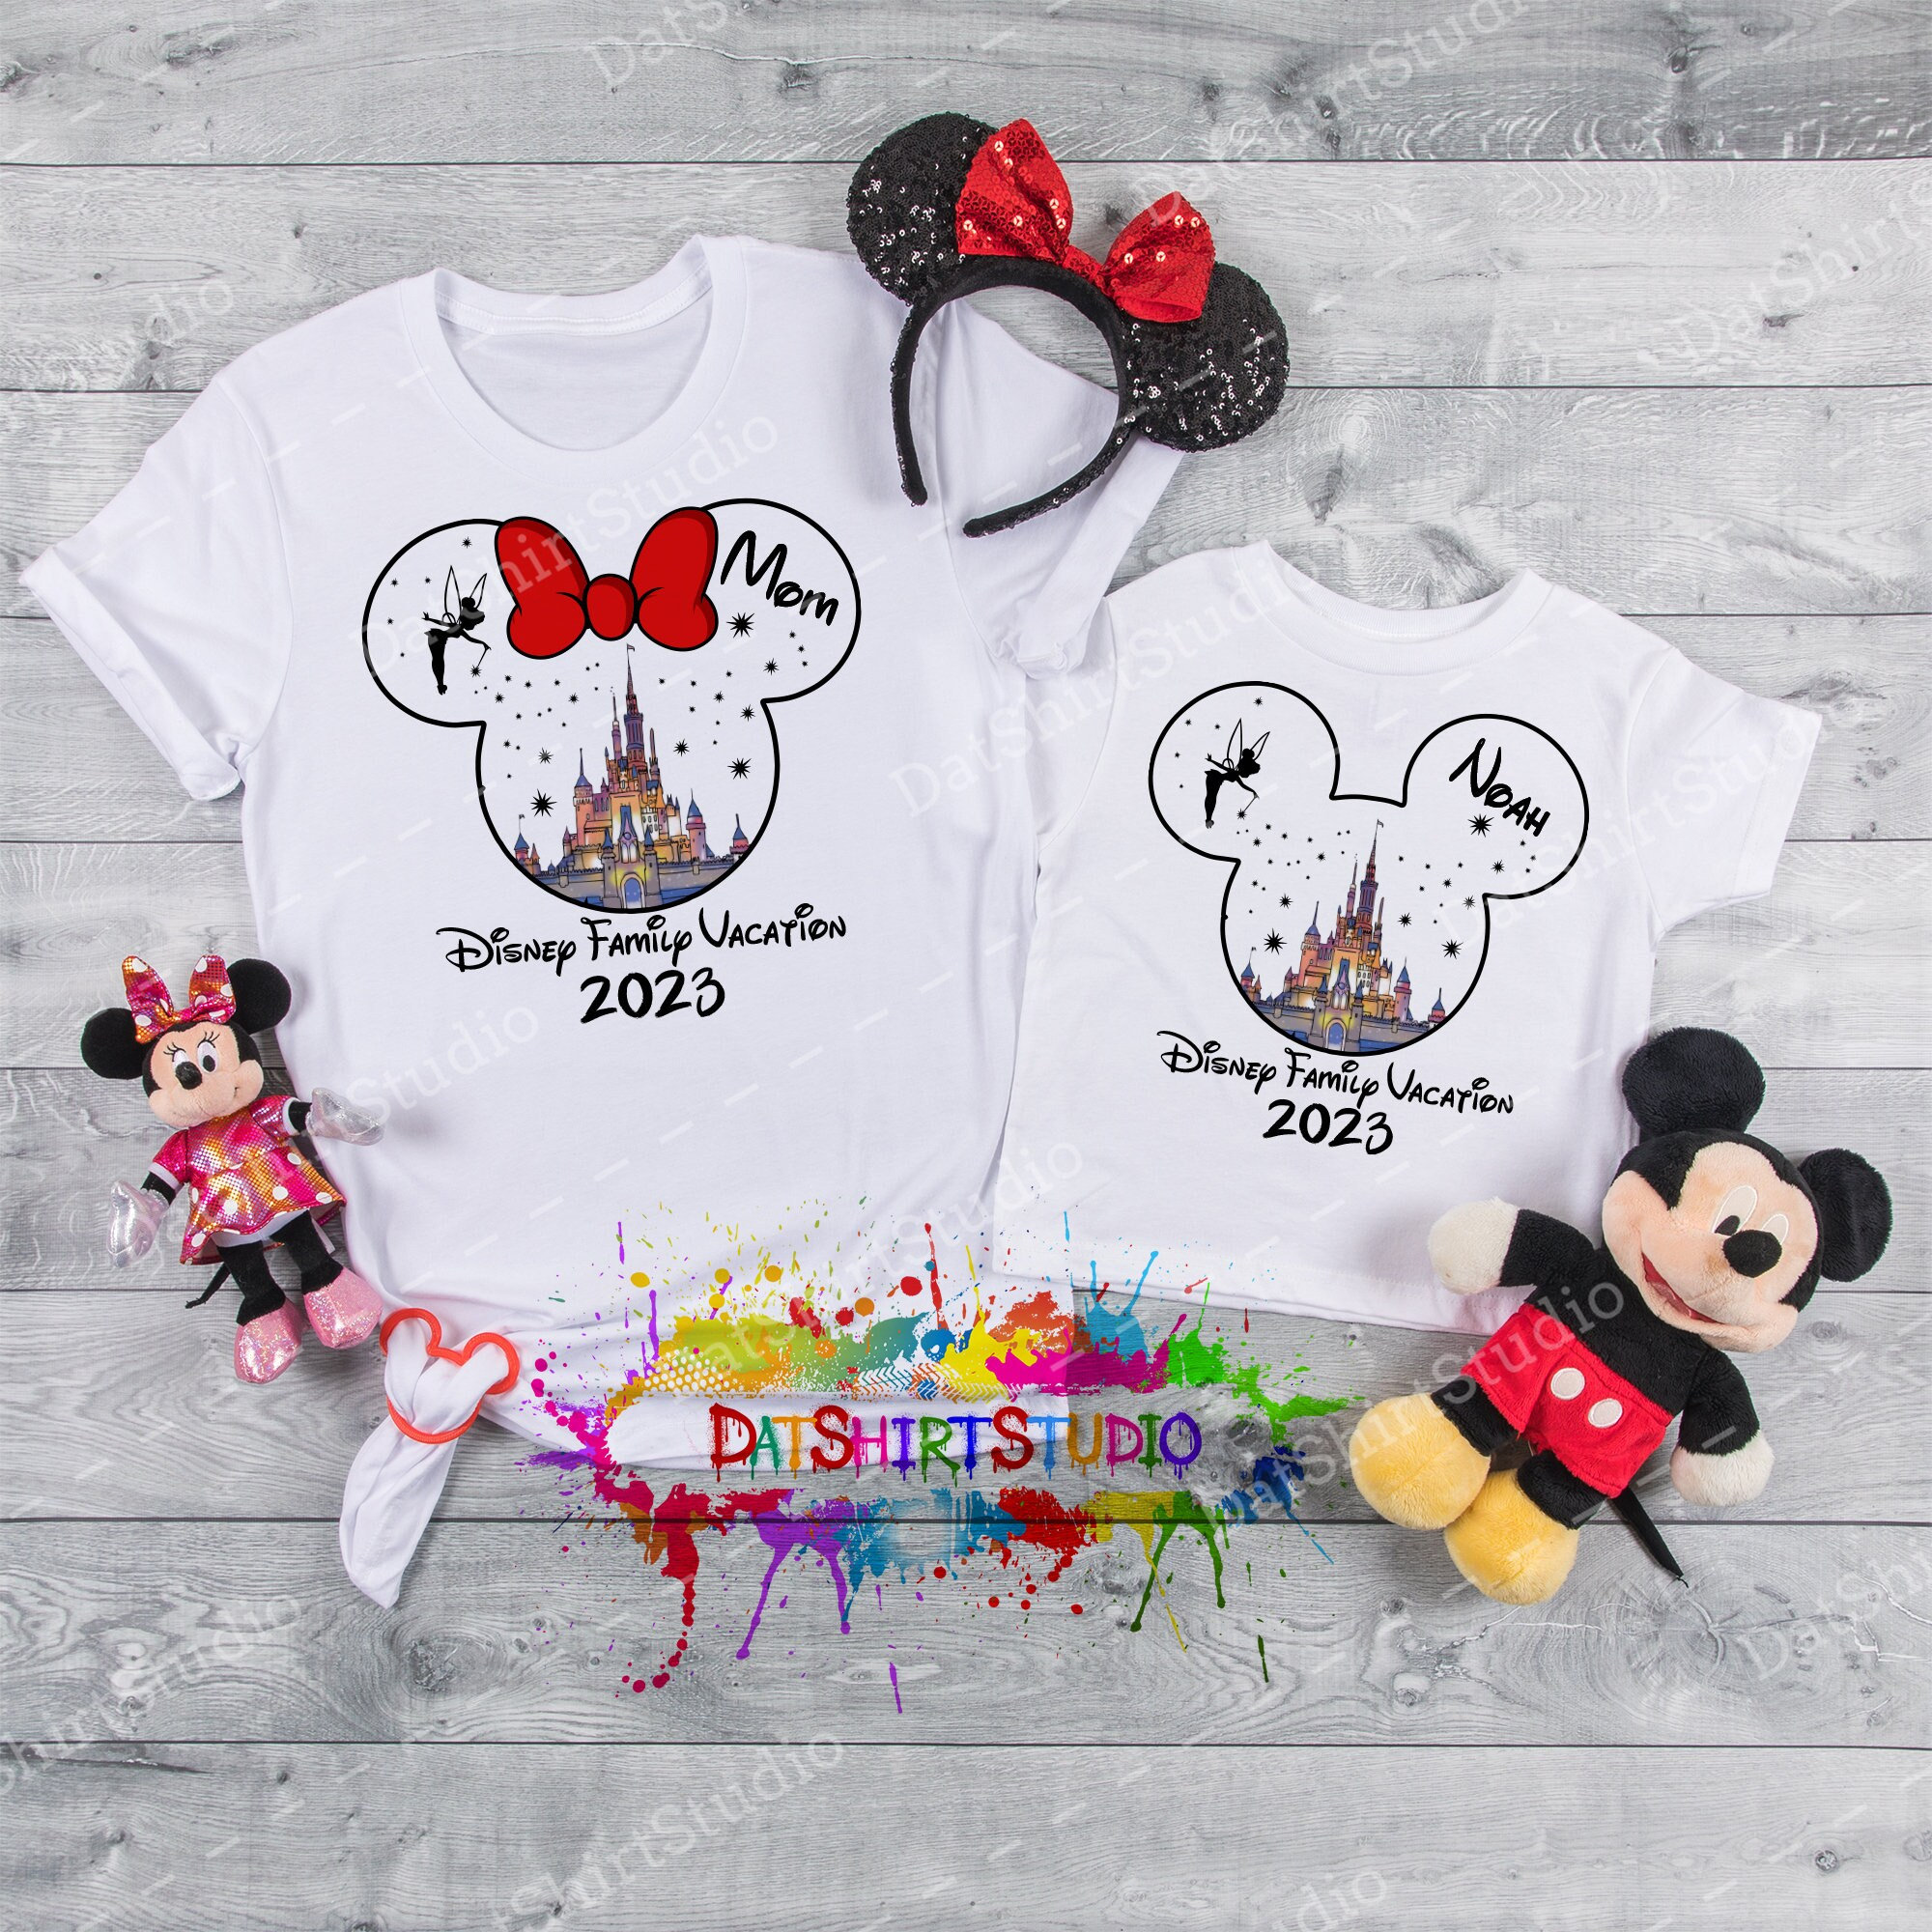 Camisetas a juego Disney Disney camisetas -